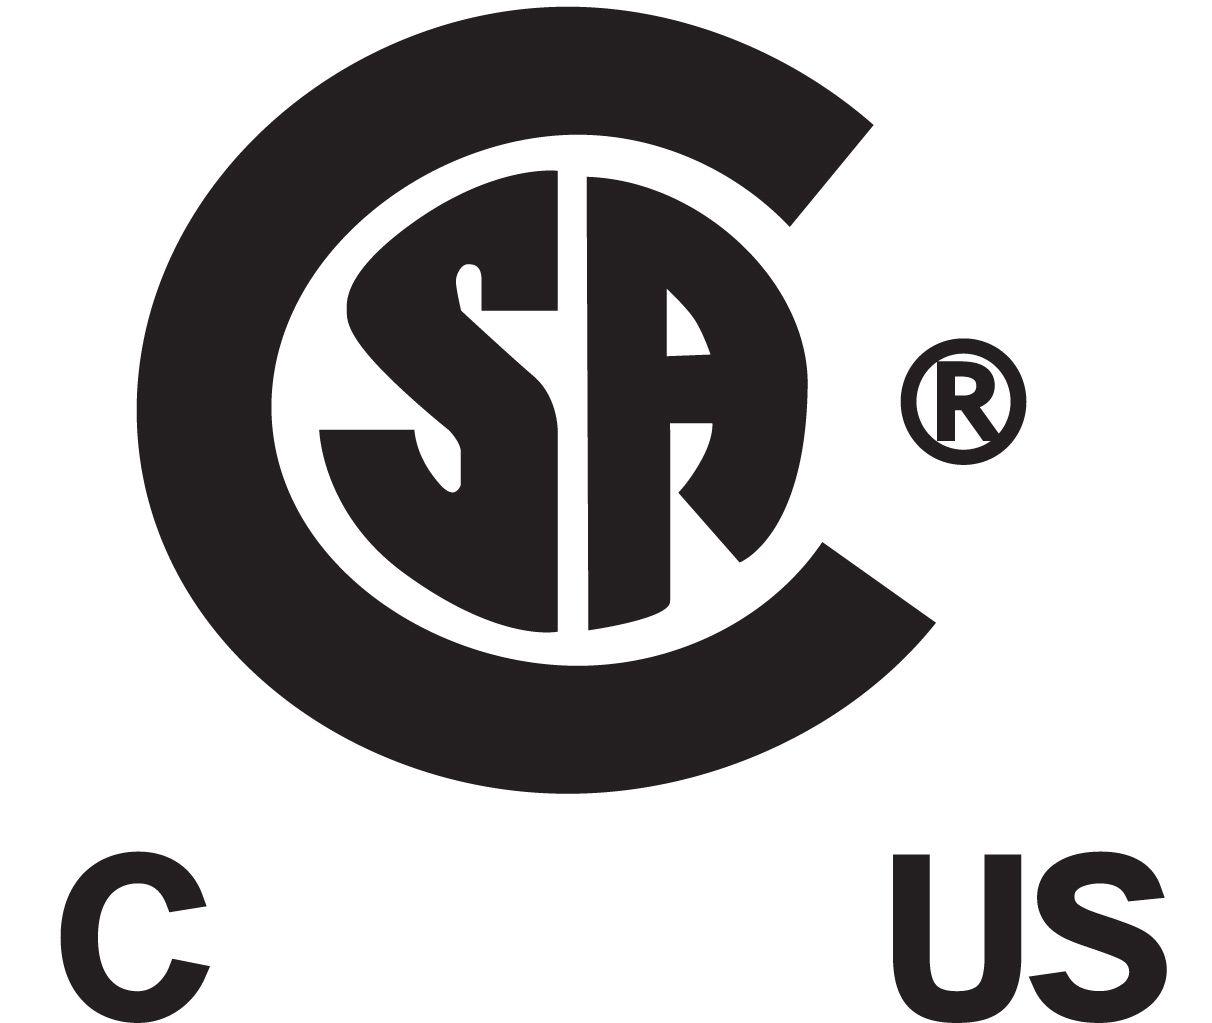 CSA Logo - Csa Logos